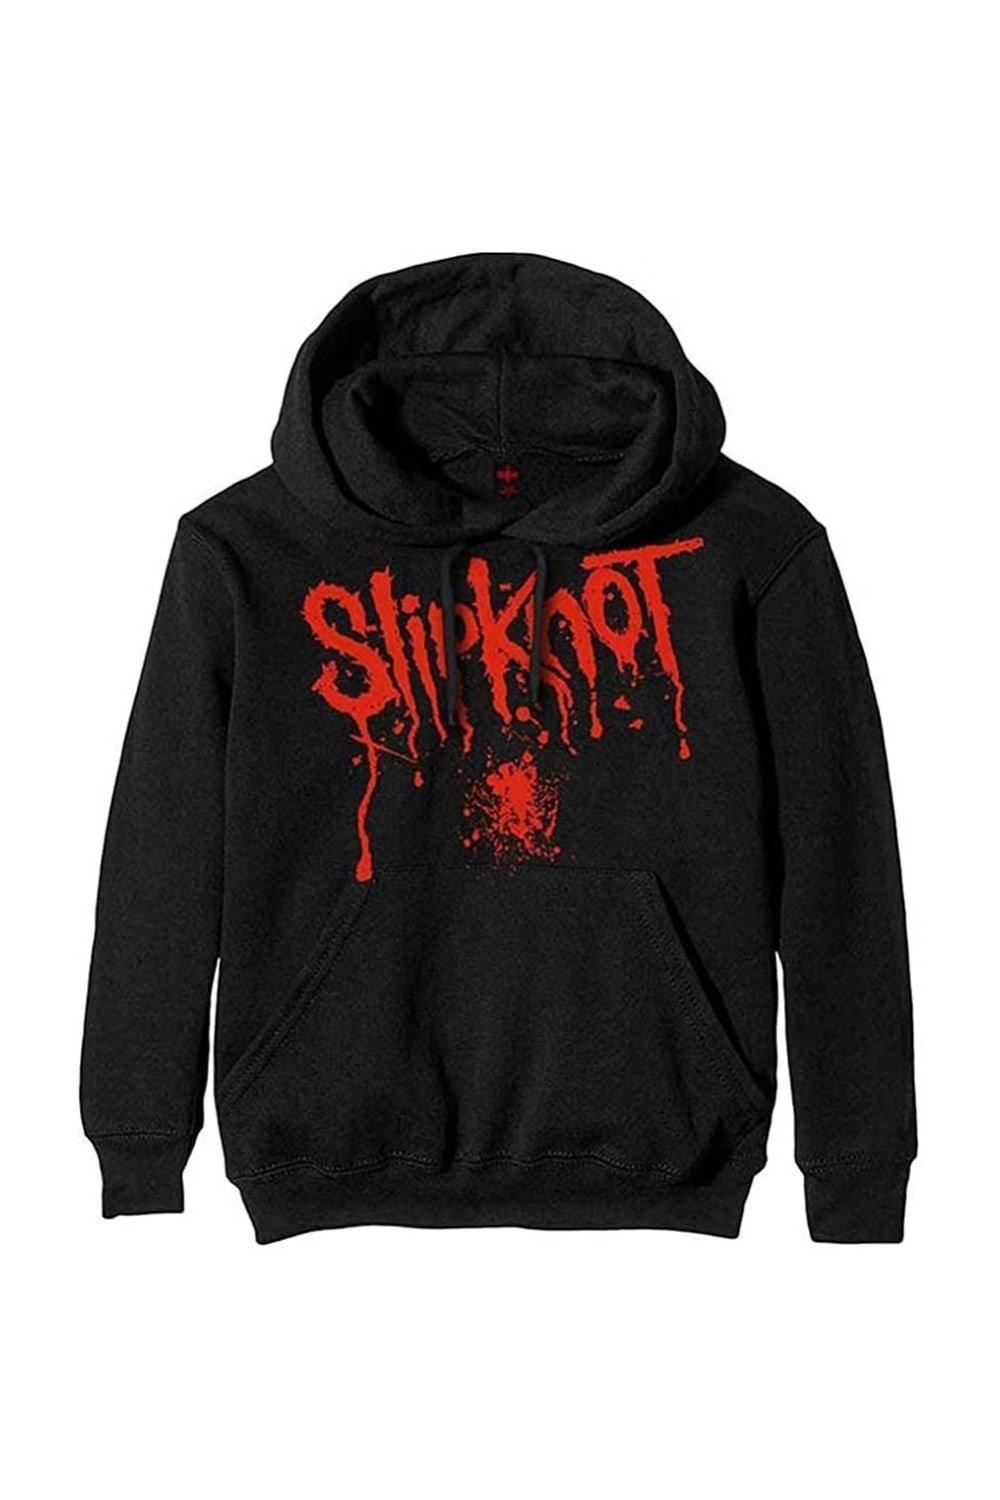 цена Пуловер с капюшоном и брызгами крови Slipknot, черный